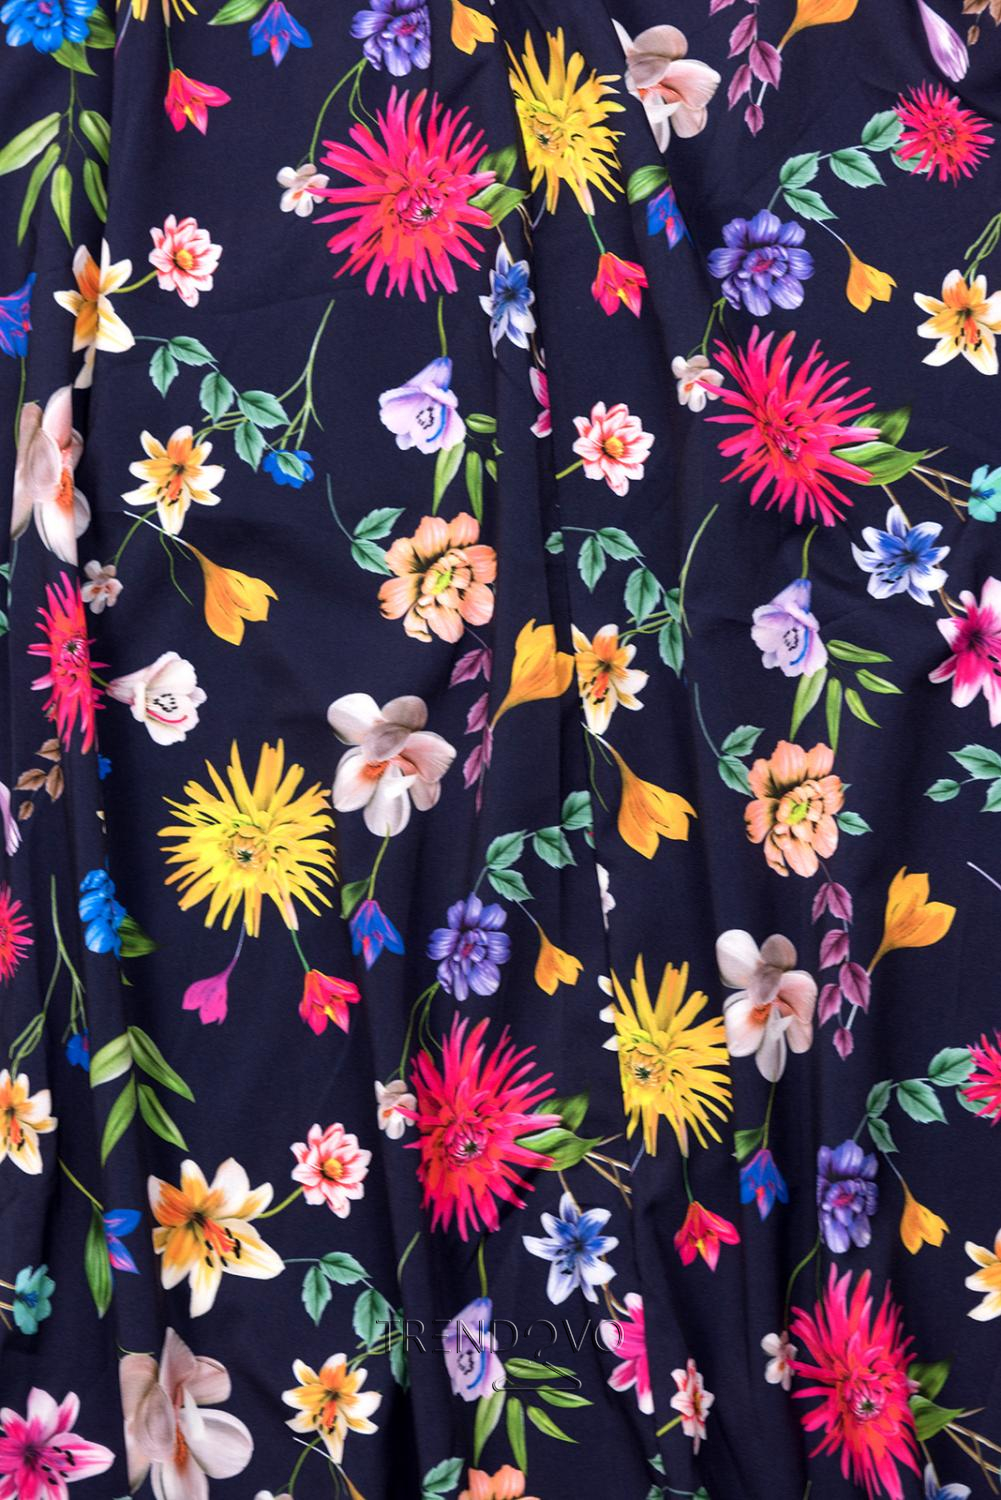 Tmavomodré maxi kvetinové farebné šaty